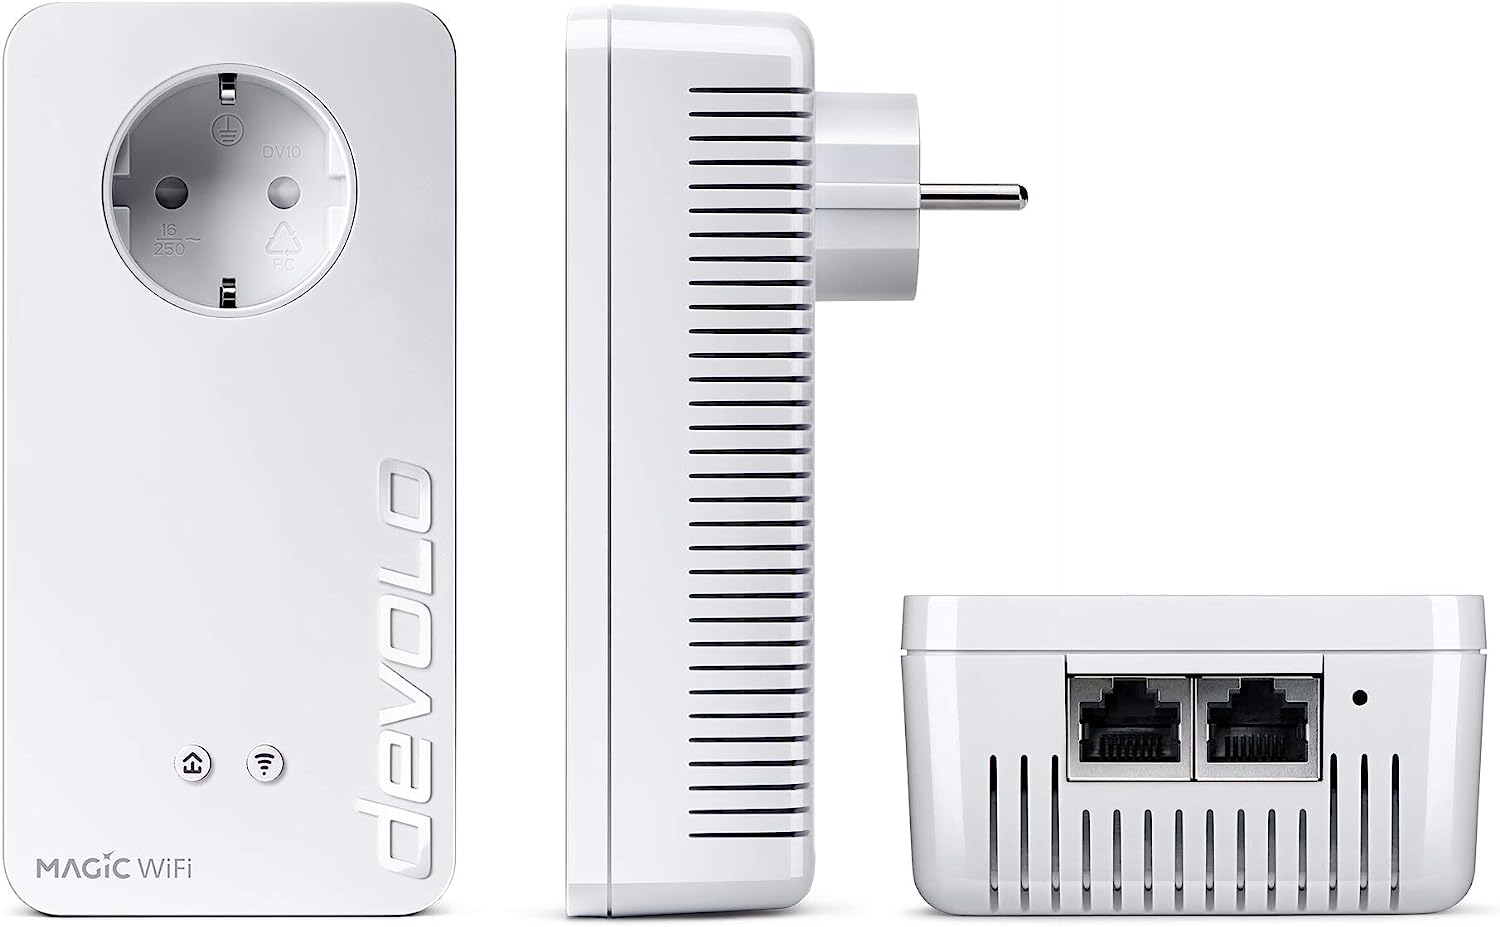 devolo Magic 1 WiFi Gaming Kit, WLAN Powerline Adapter -bis zu 1.200 Mbit/s, Mesh WLAN, WLAN Steckdose, ideal für Cloud Gaming, 2x LAN Anschluss, weiß mit WLAN Gaming Kit Single